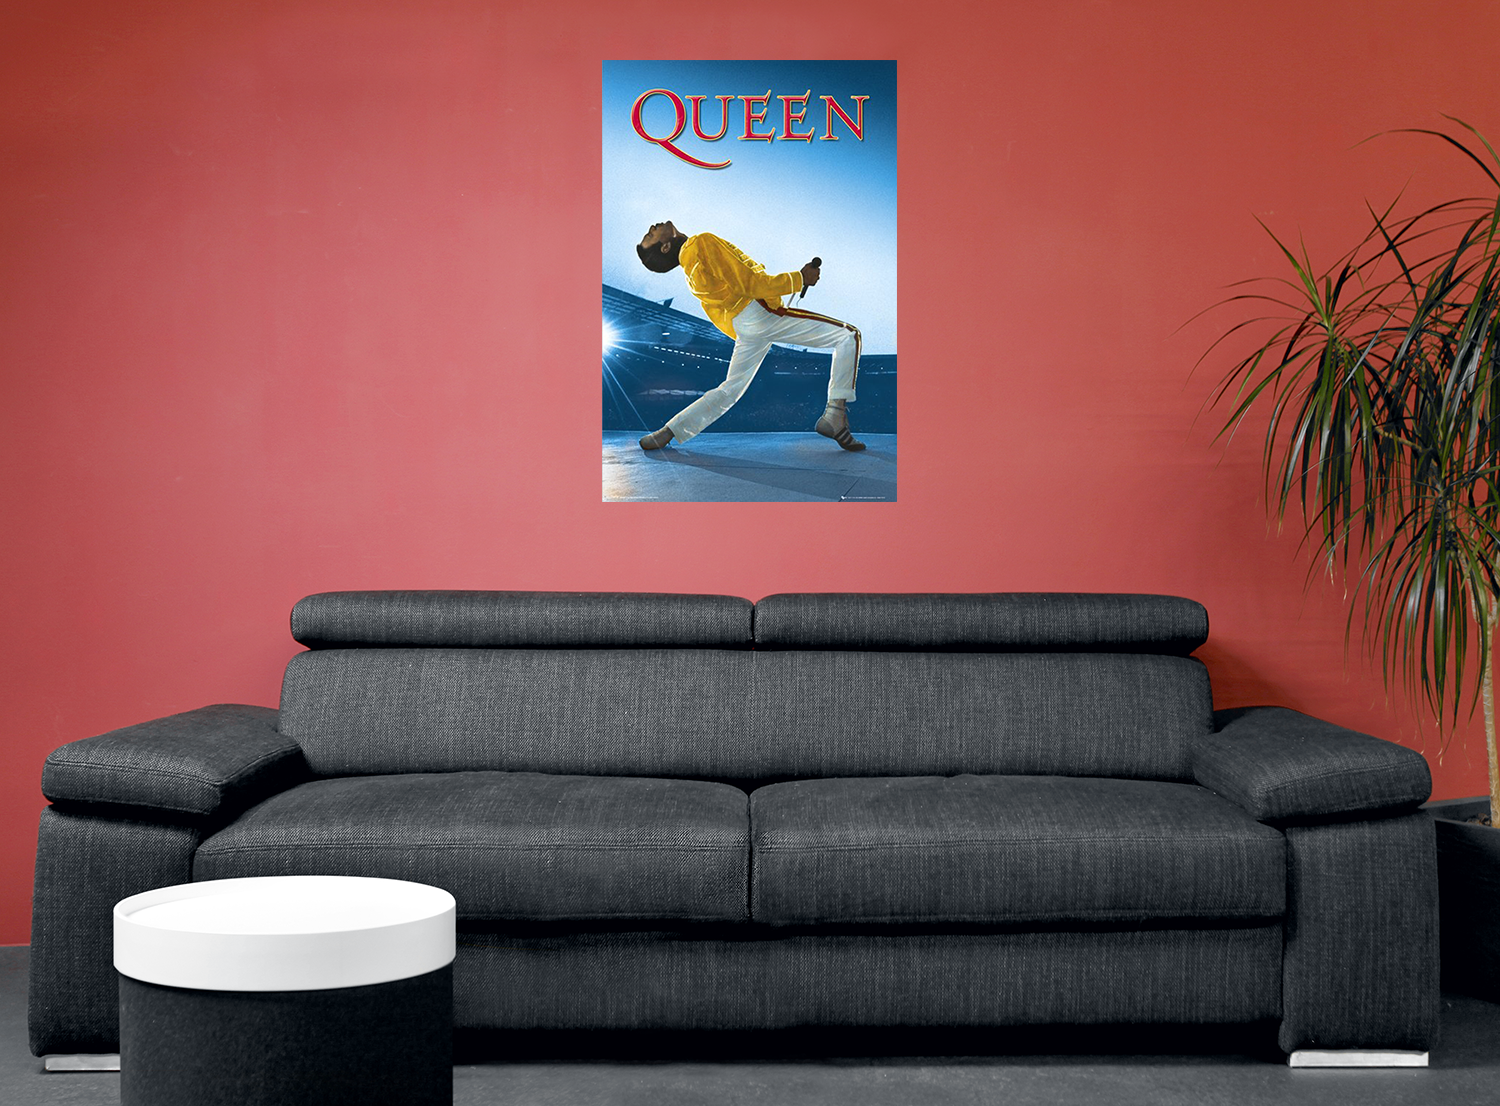 Artikel klicken und genauer betrachten! - Offizielles Merchandise bei EMP Queen Wembley Unisex Poster in den Größen Onesize verfügbar.Details:Farbe: multicolorHauptmaterial: Papier | im Online Shop kaufen